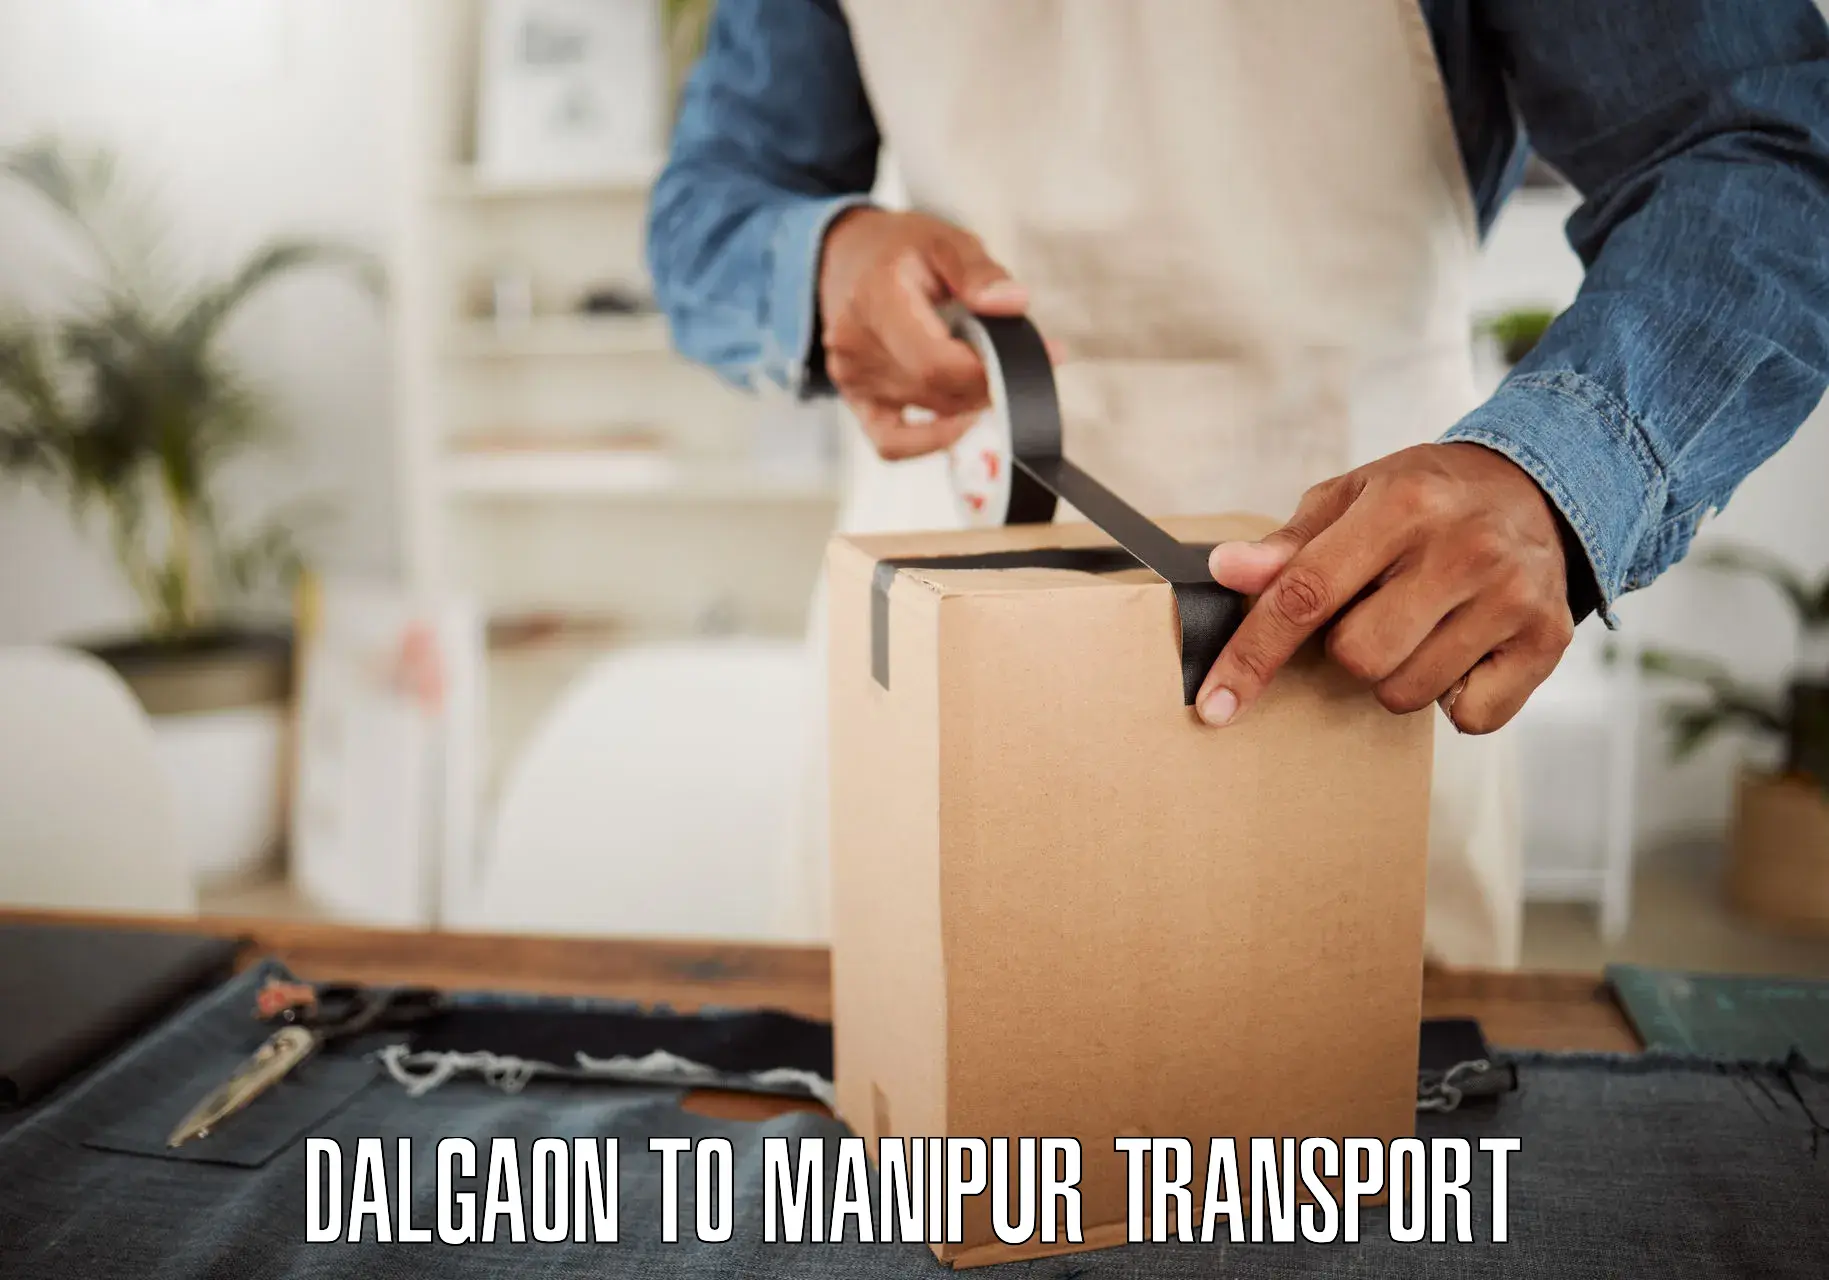 Online transport service Dalgaon to Ukhrul